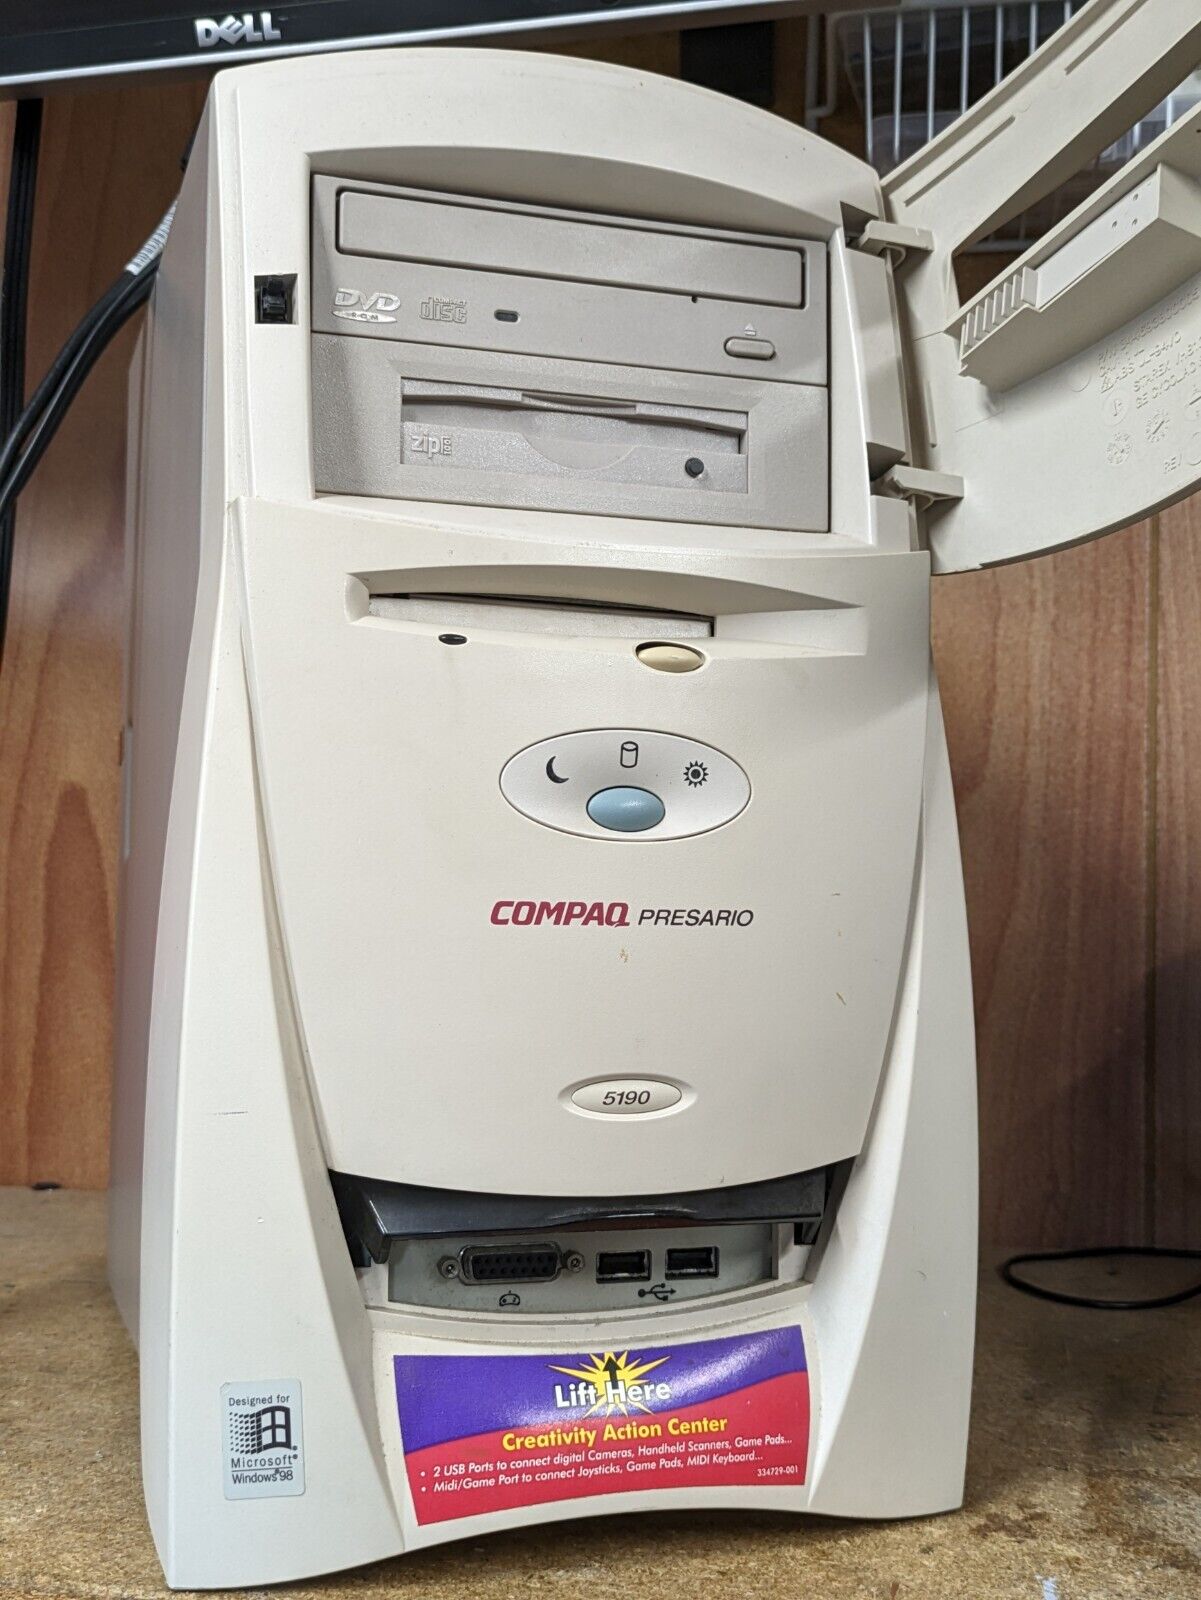 Compaq Presario 5190 Windows 98 PC